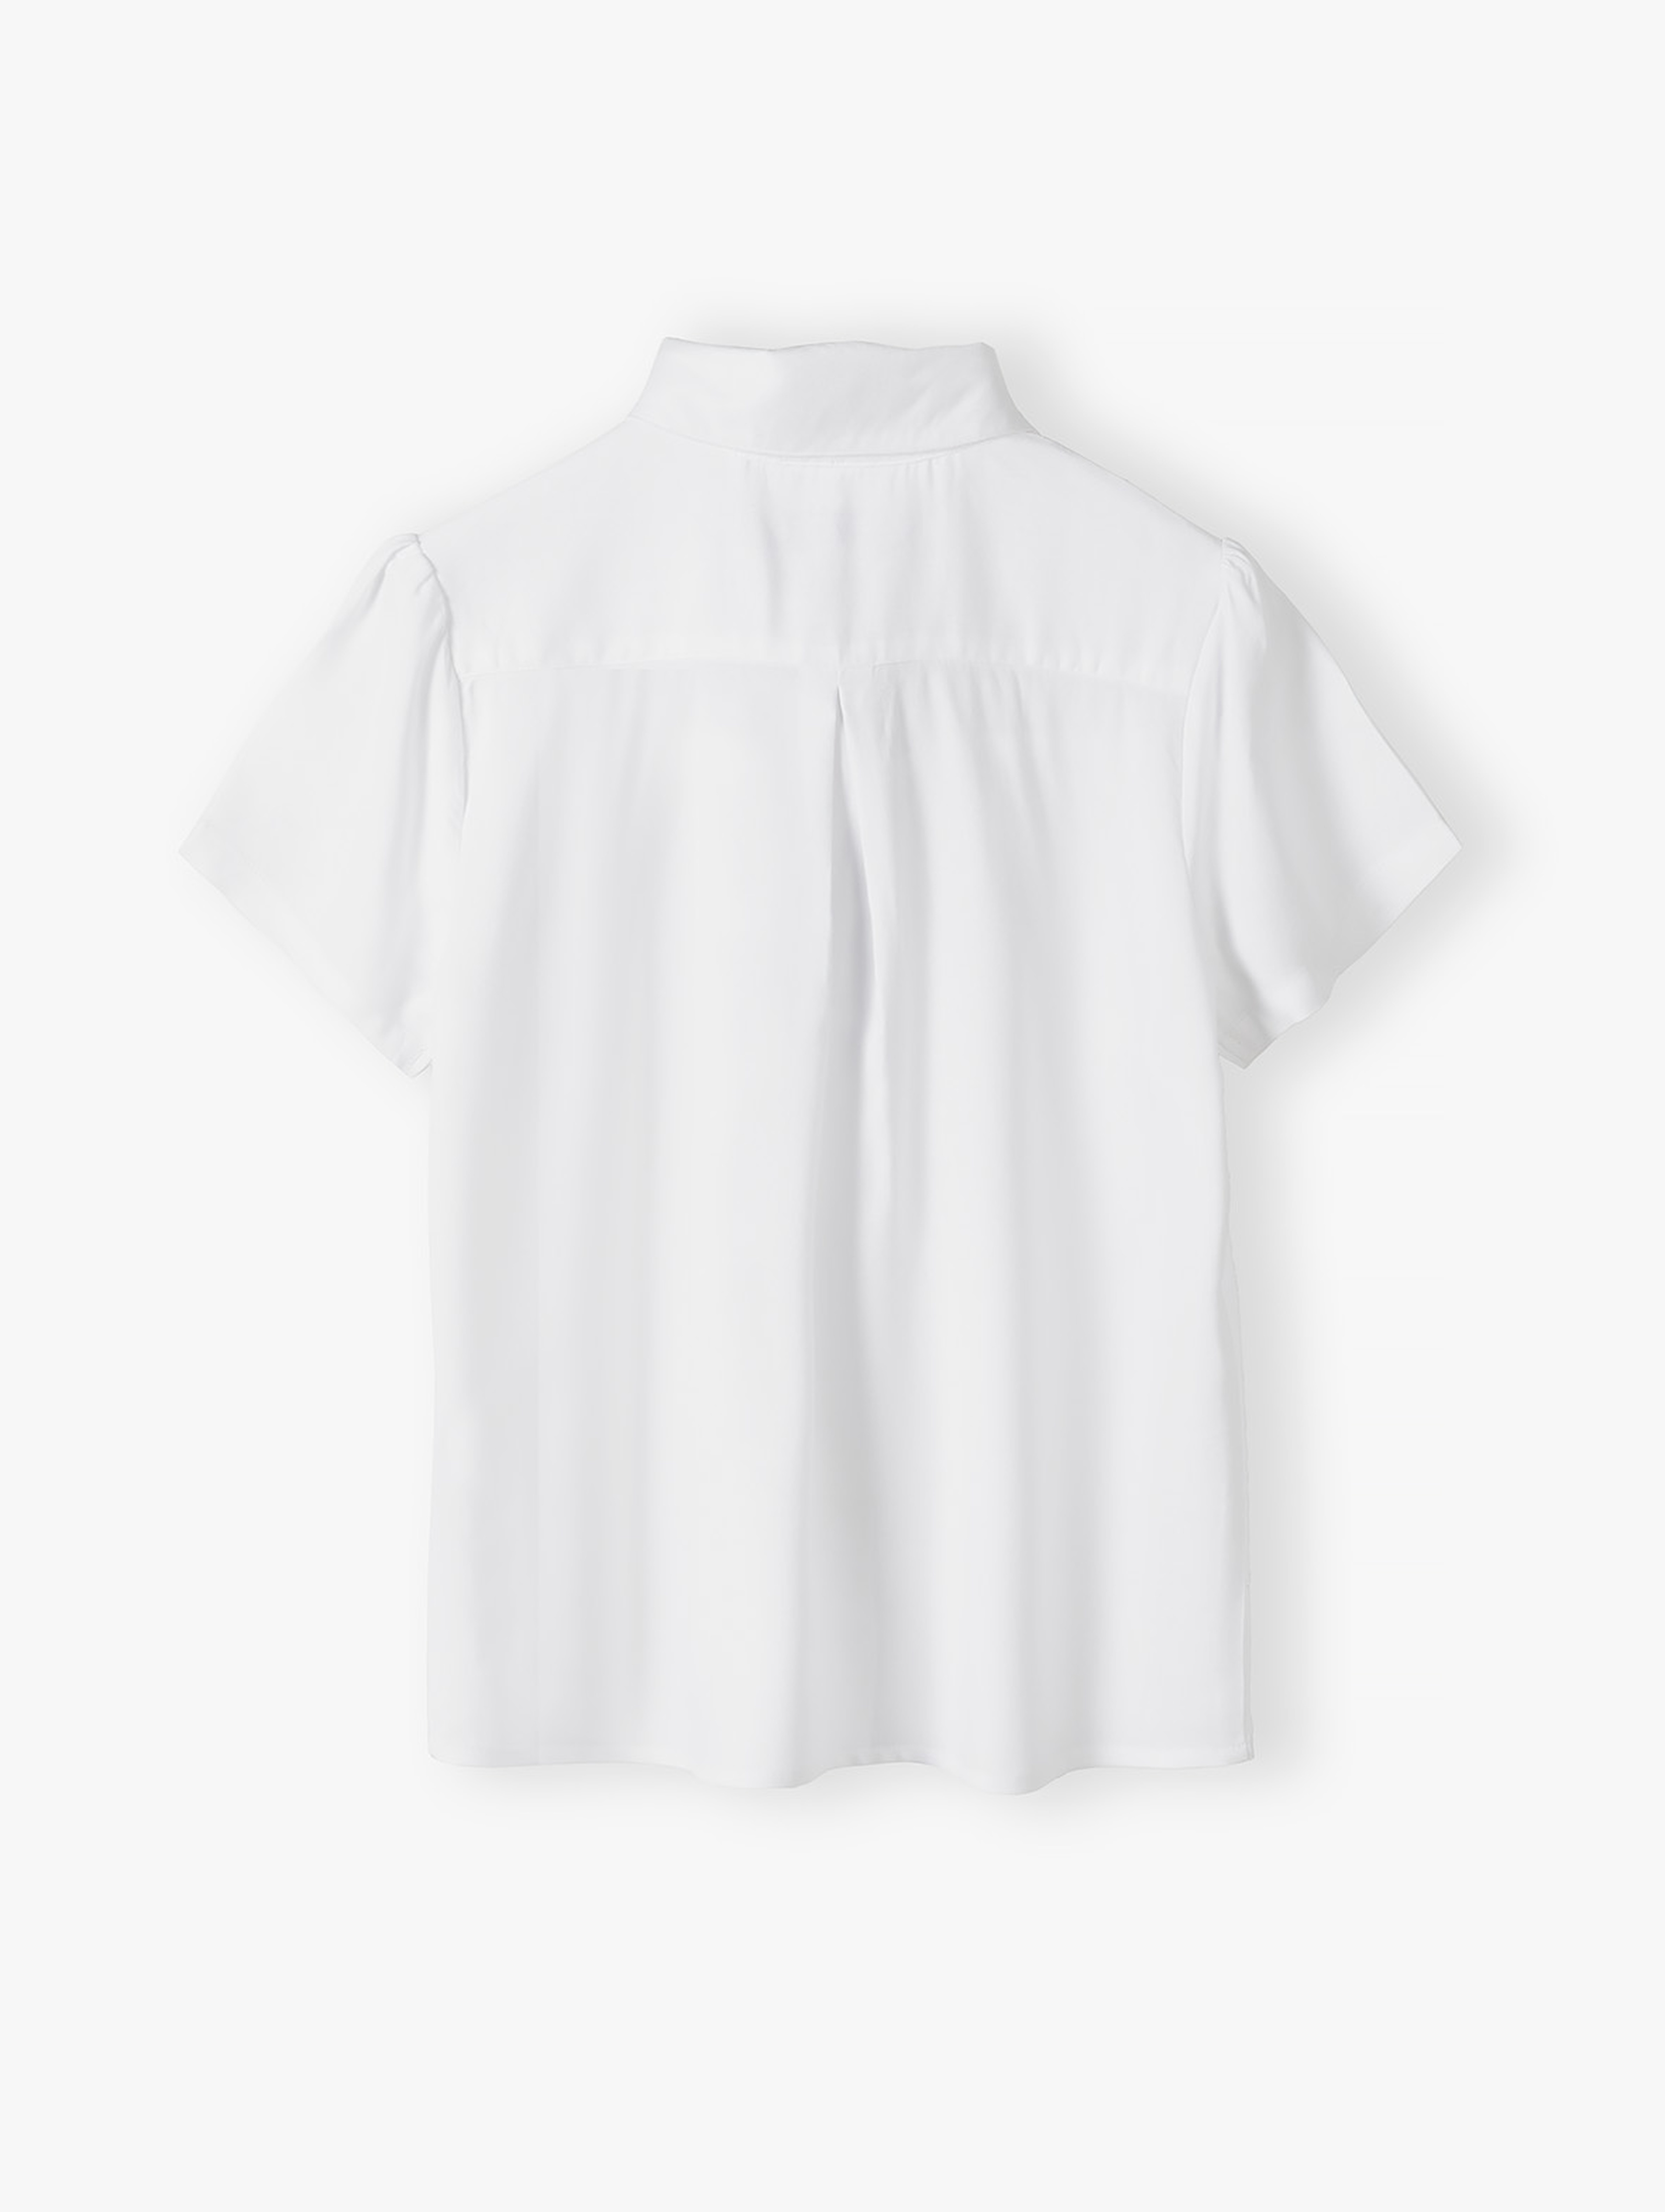 Biała elegancka koszula z krótkim rękawem dla dziewczynki